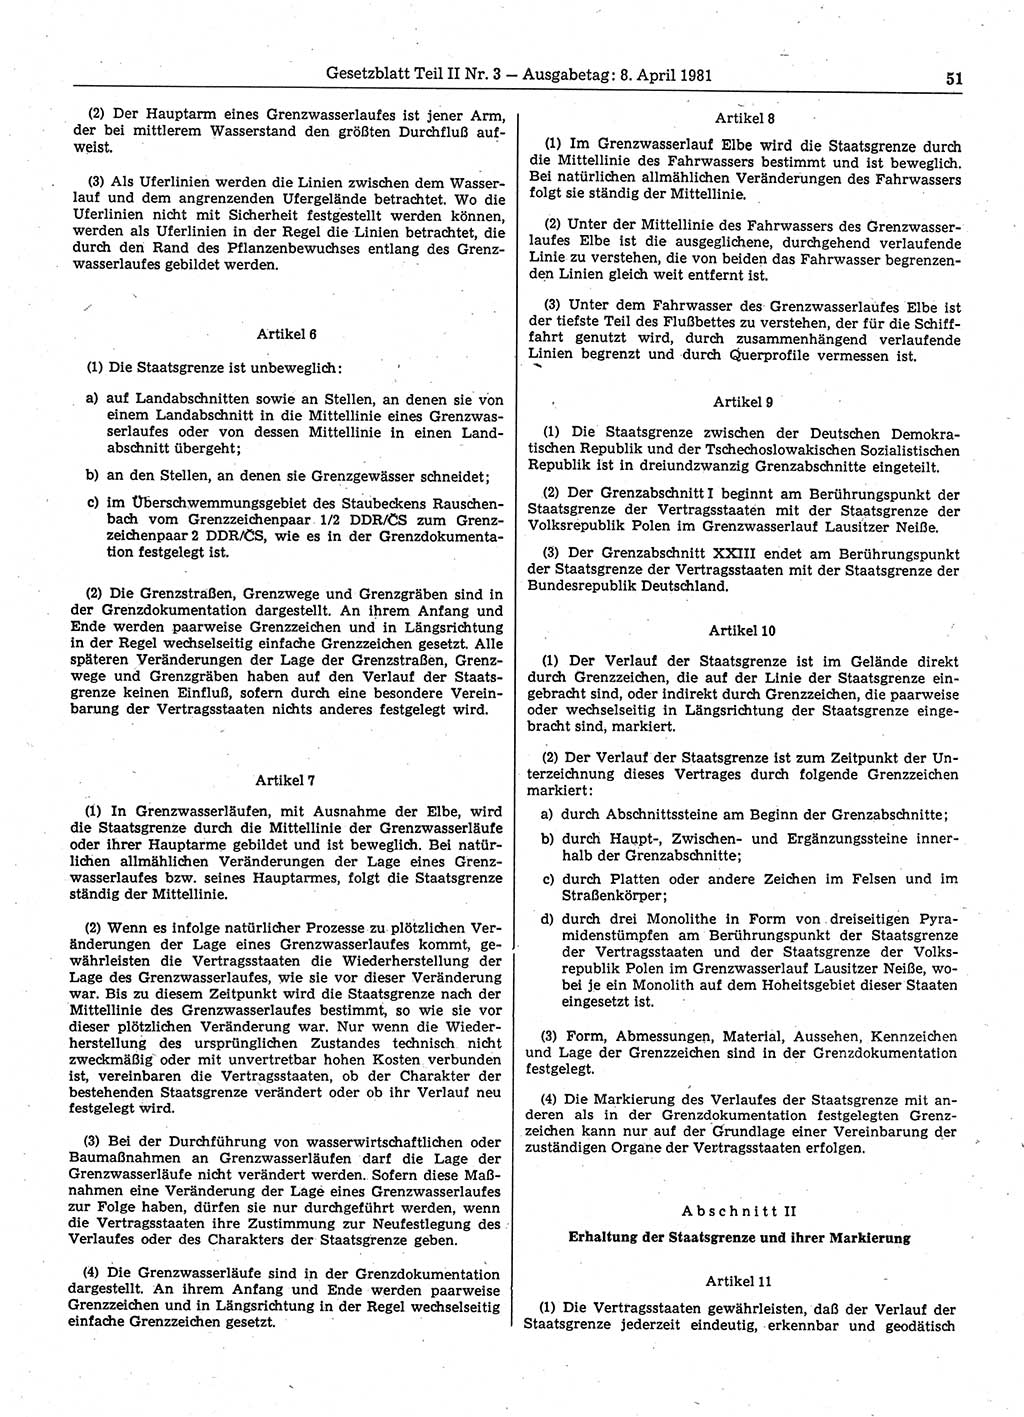 Gesetzblatt (GBl.) der Deutschen Demokratischen Republik (DDR) Teil ⅠⅠ 1981, Seite 51 (GBl. DDR ⅠⅠ 1981, S. 51)